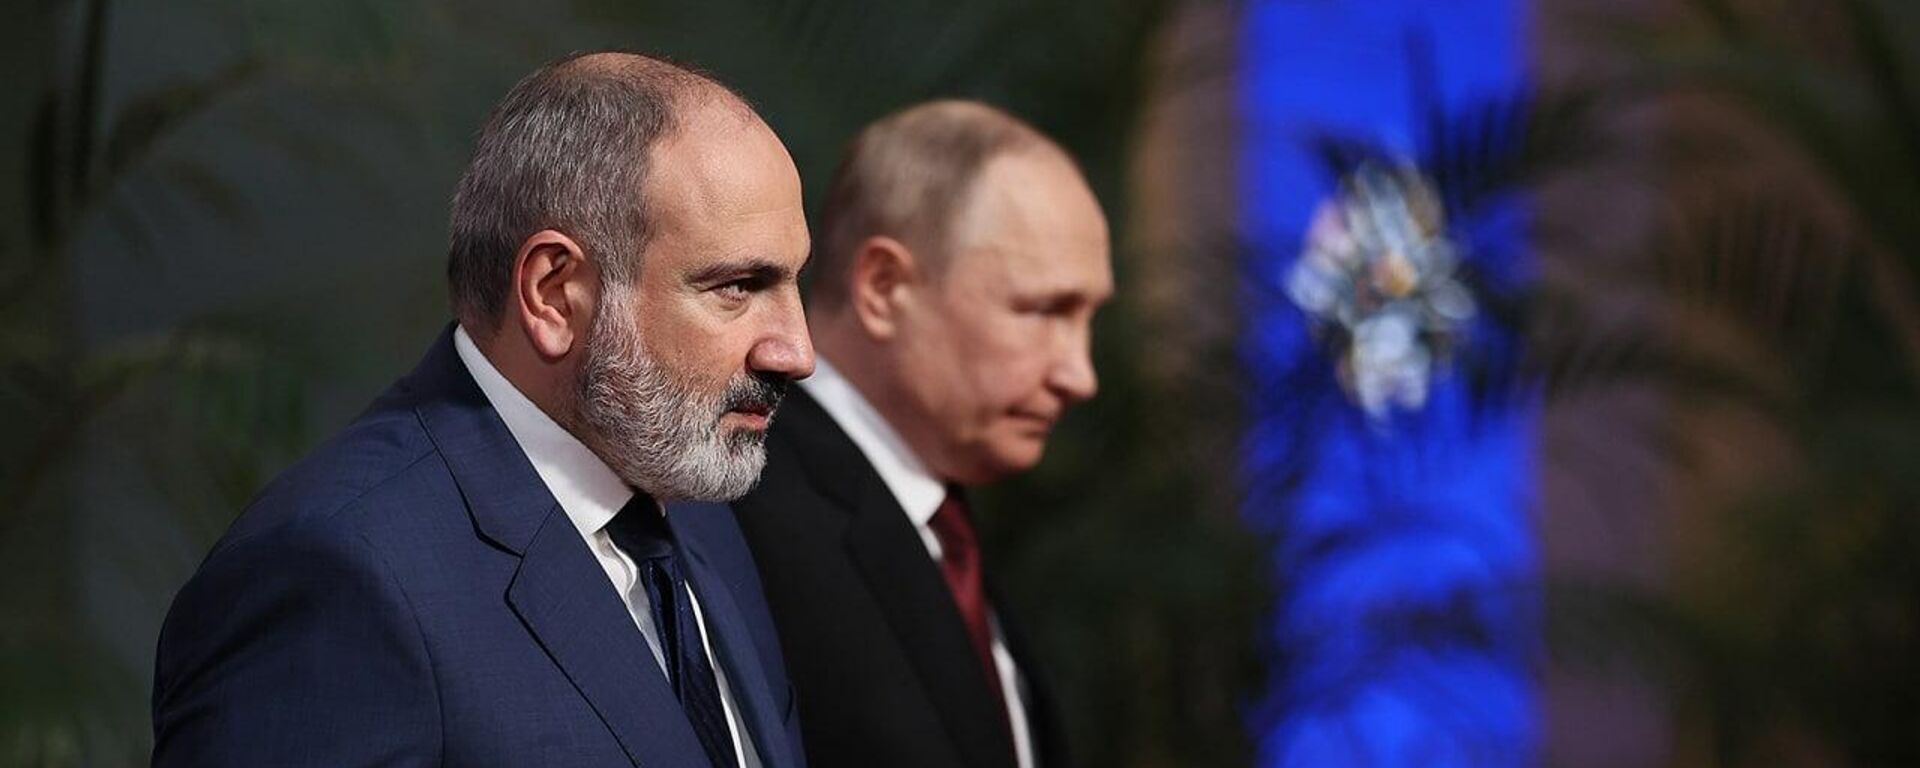 Пашинян: Не думаю, что Владимиру Путину нужен мой совет